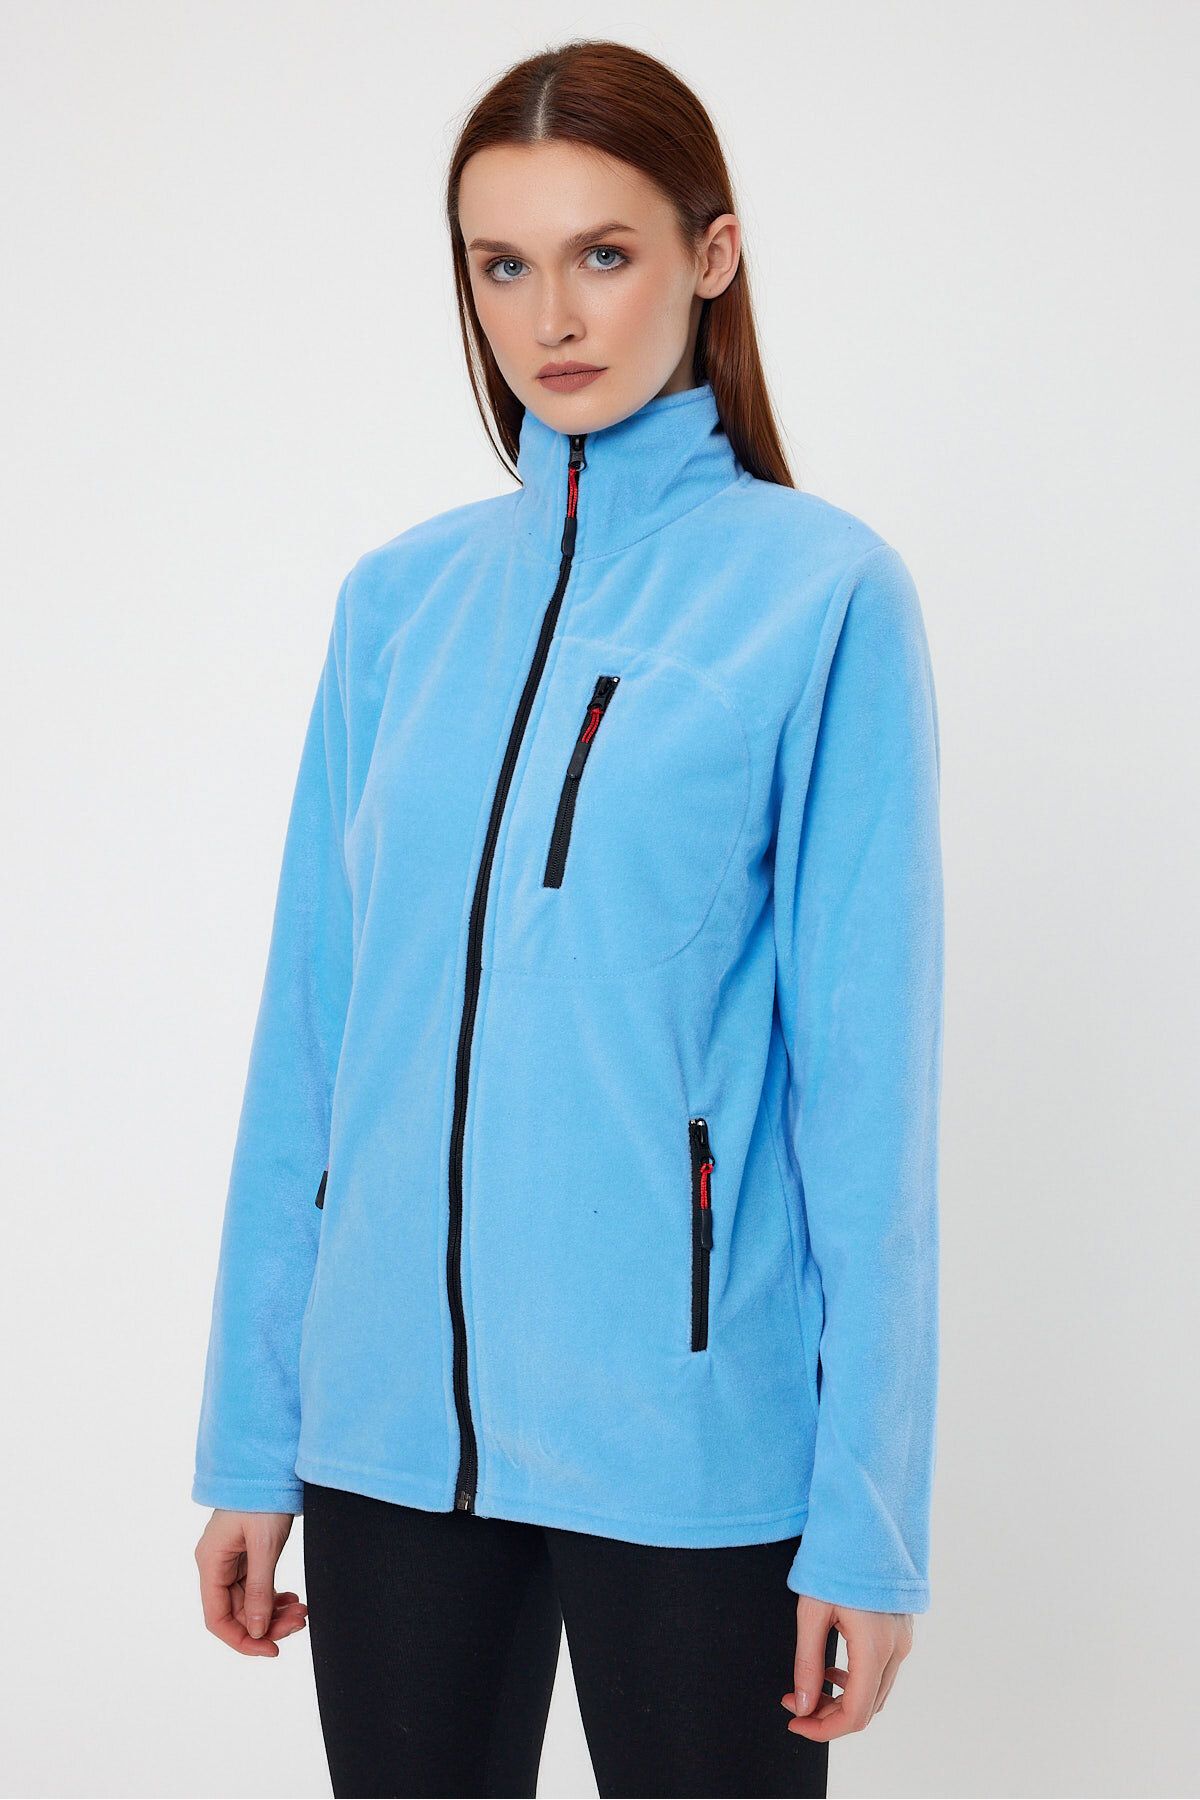 COMBİNE MİCHAİL Kadın Mavi Polar Tam Fermuarlı Outdoor 3 Cepli Spor Polar Ceket